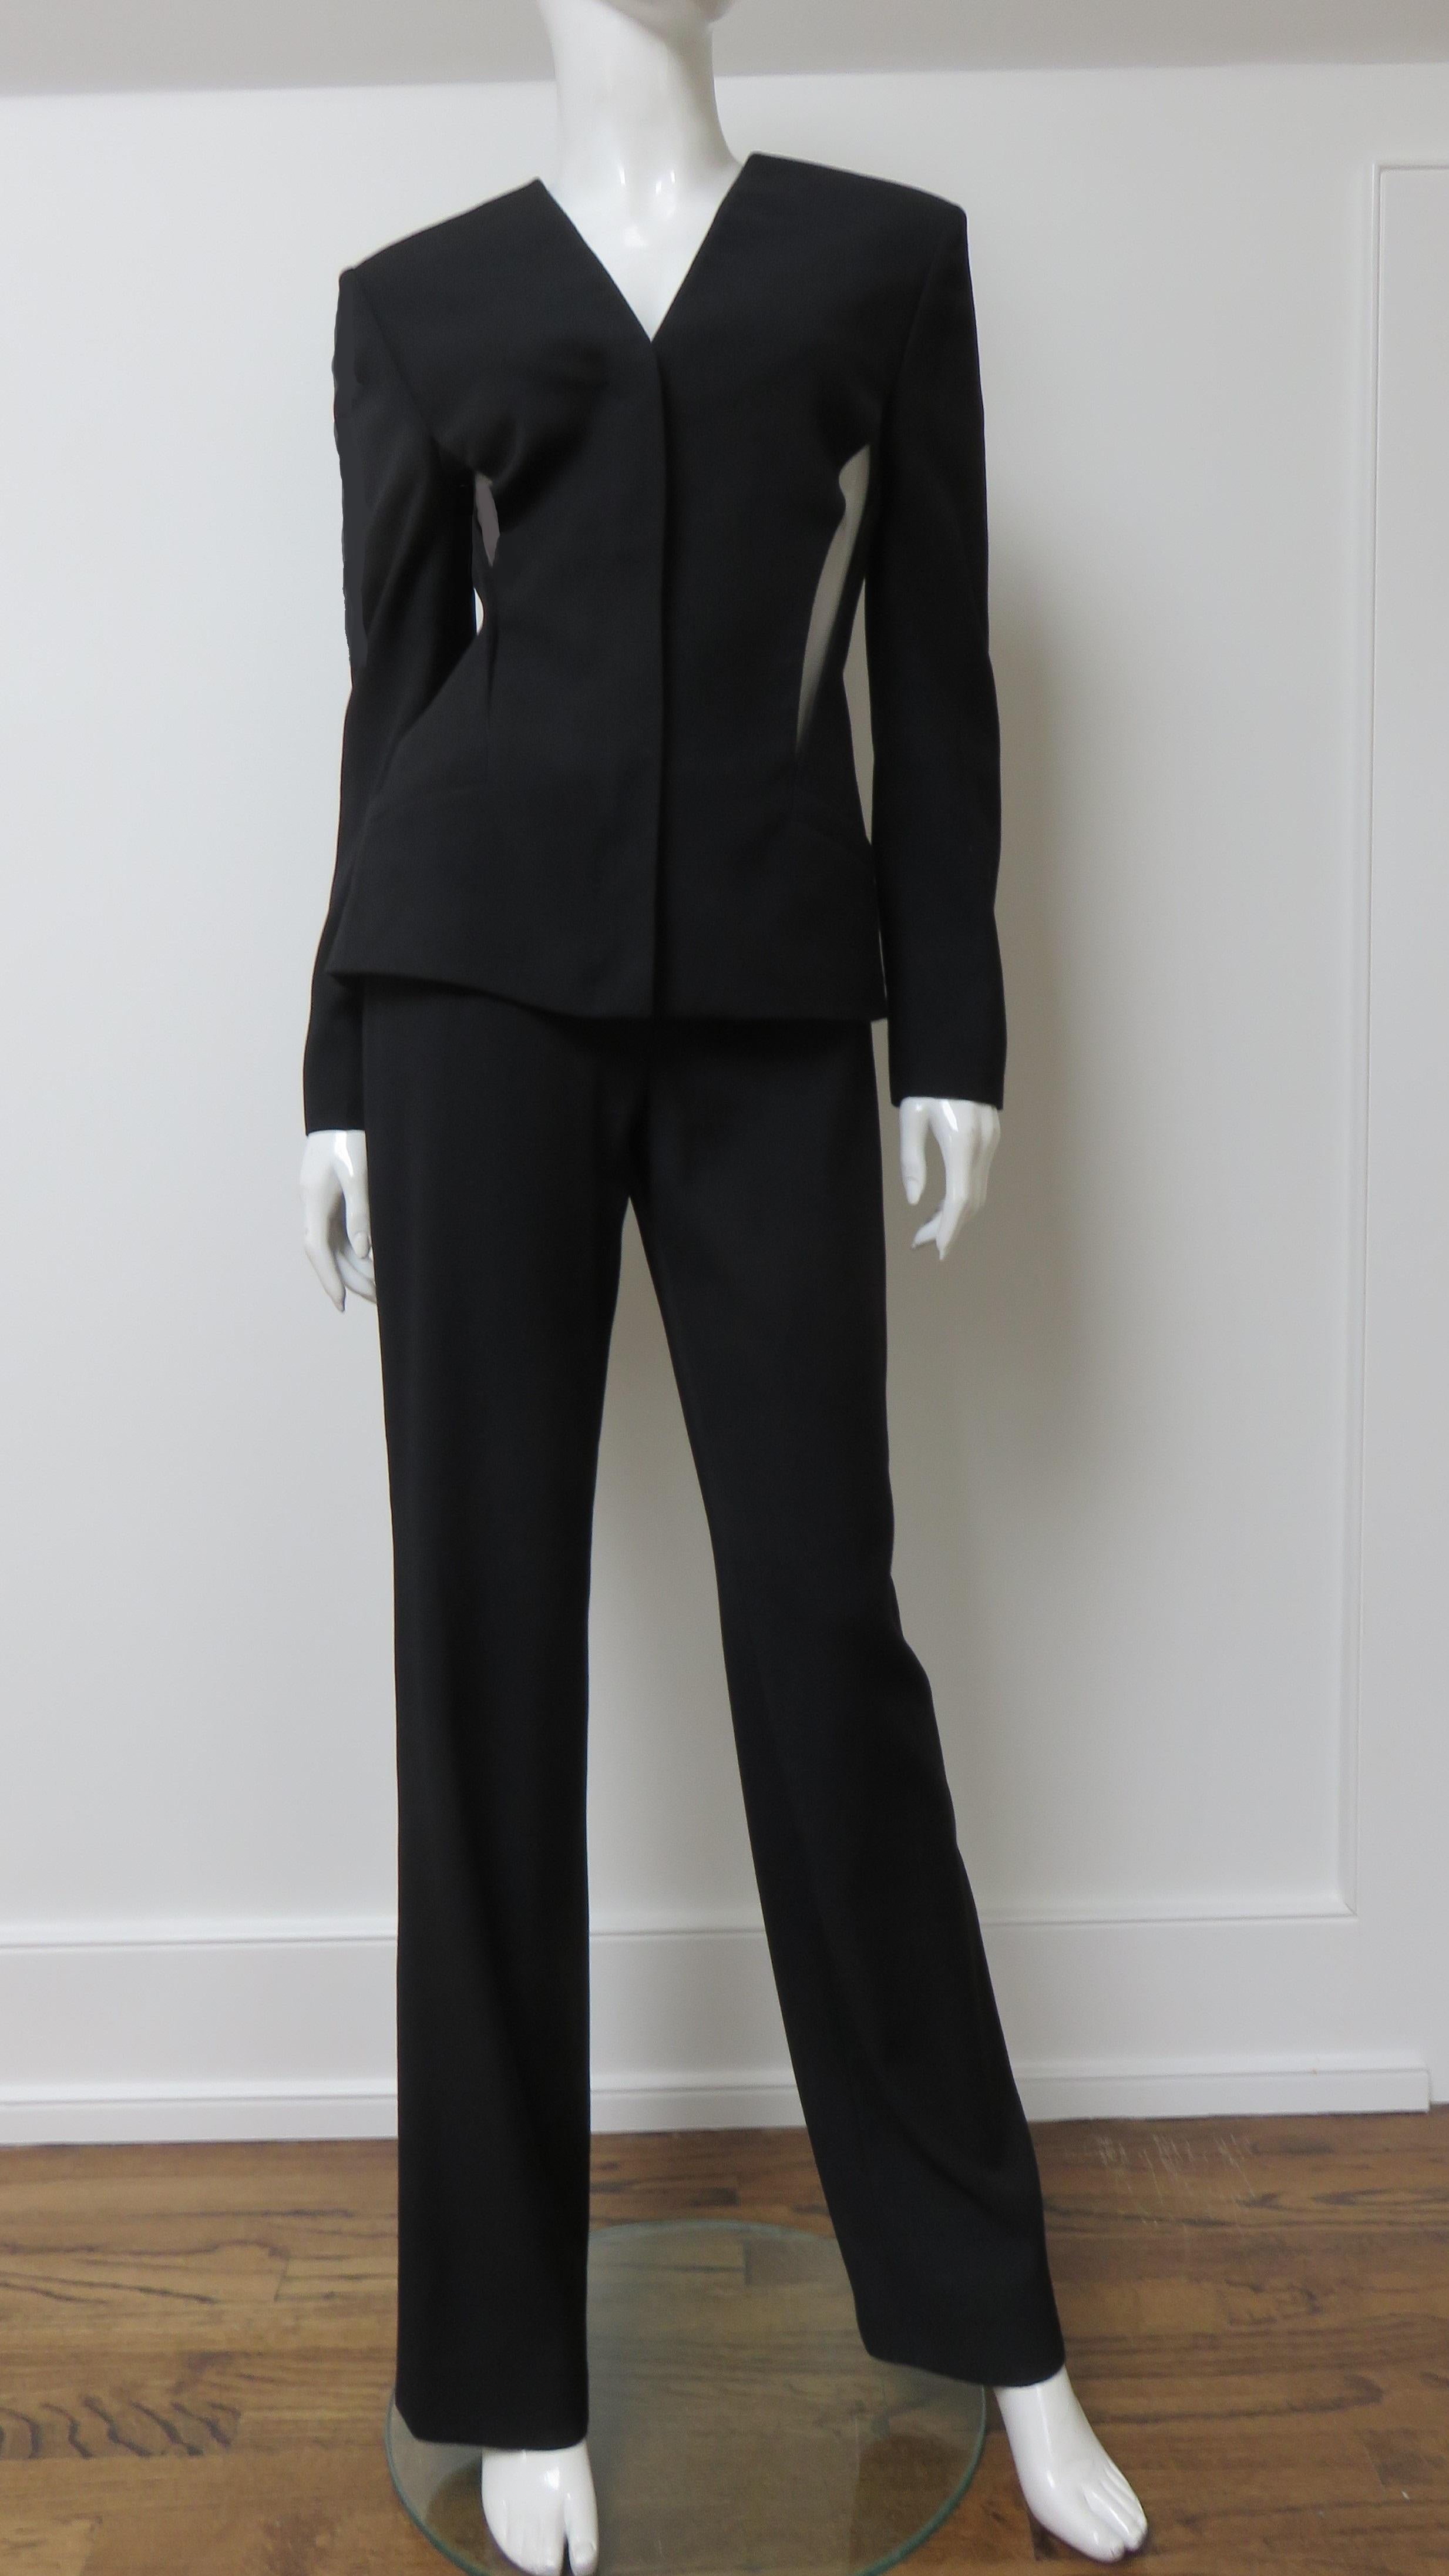 Ein prächtiger schwarzer Seidenanzug von Gianni Versace Couture.  Die Jacke hat einen V-Ausschnitt, Prinzessnähte für eine schmeichelhafte Passform, leicht gepolsterte Schultern, einen Reißverschluss an der Vorderseite und einen mit Mesh überzogenen